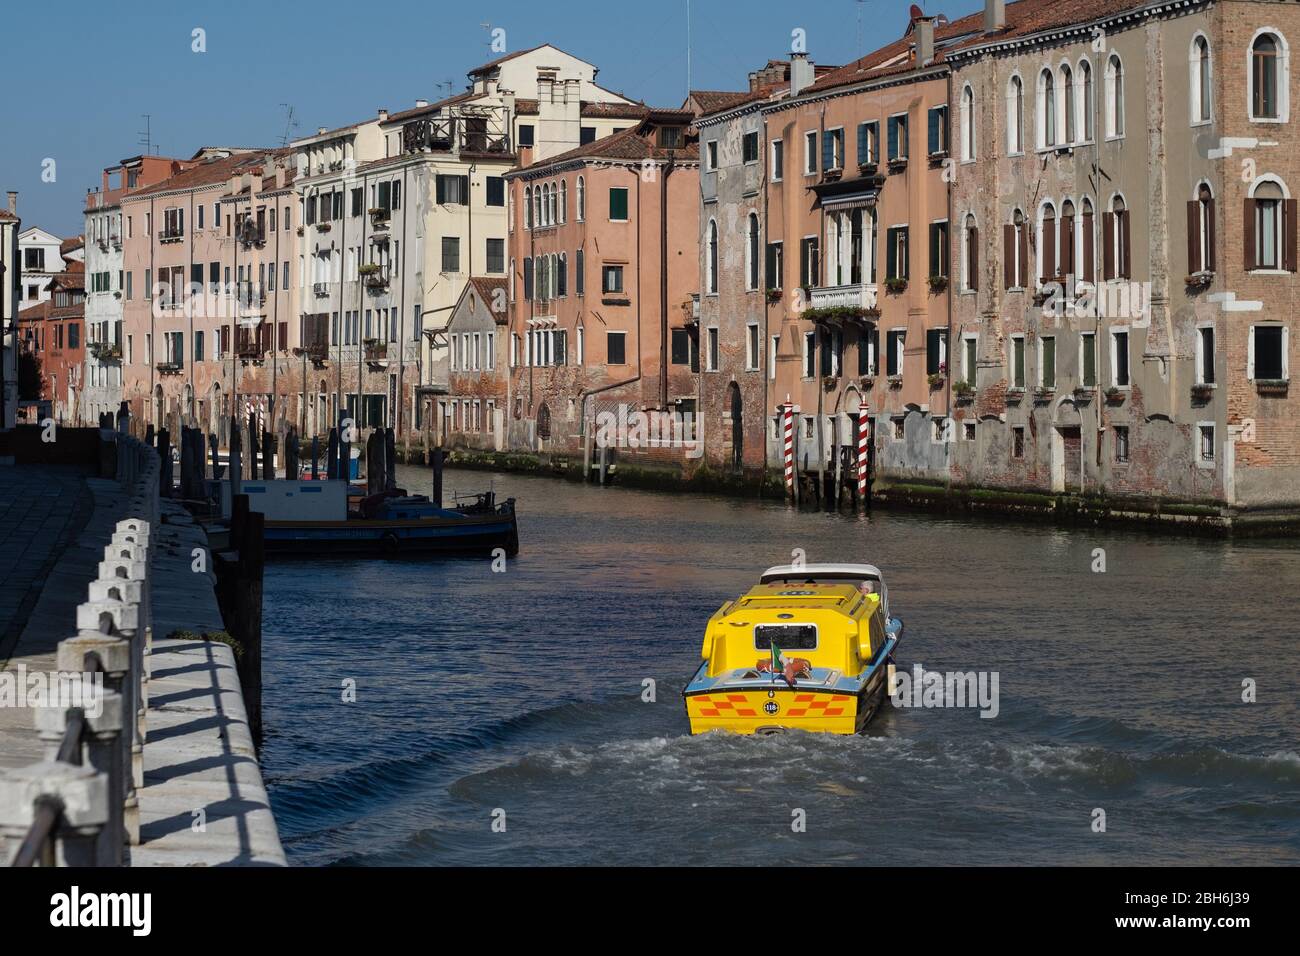 VENEZIA, ITALIA - APRILE 2020: Un'ambulanza naviga su un canale vuoto durante il blocco nazionale per la pandemia Covid-19. Foto Stock